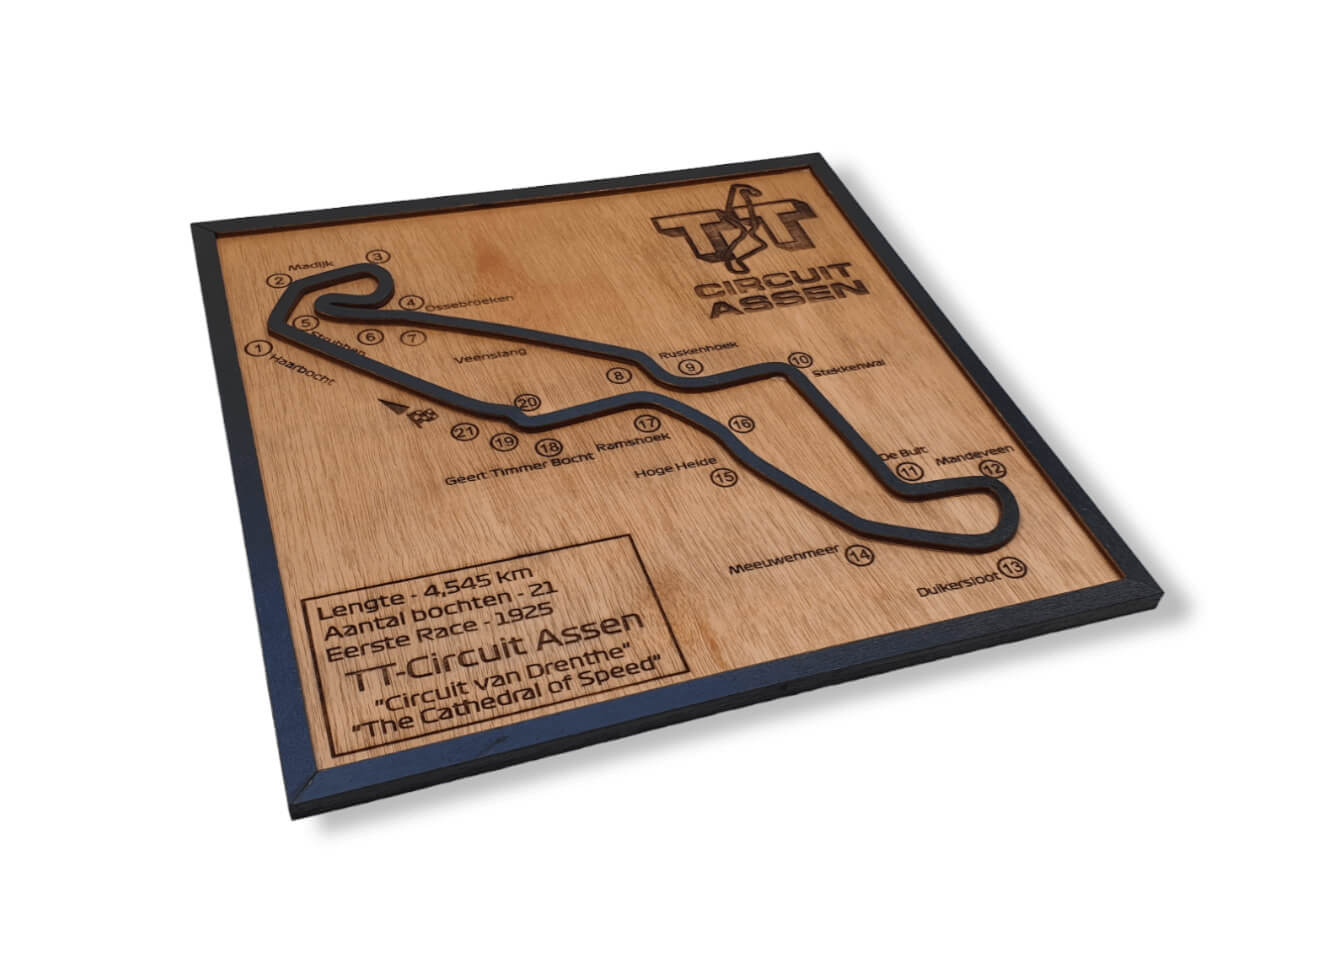 Wandbord TT-Circuit Assen (1)